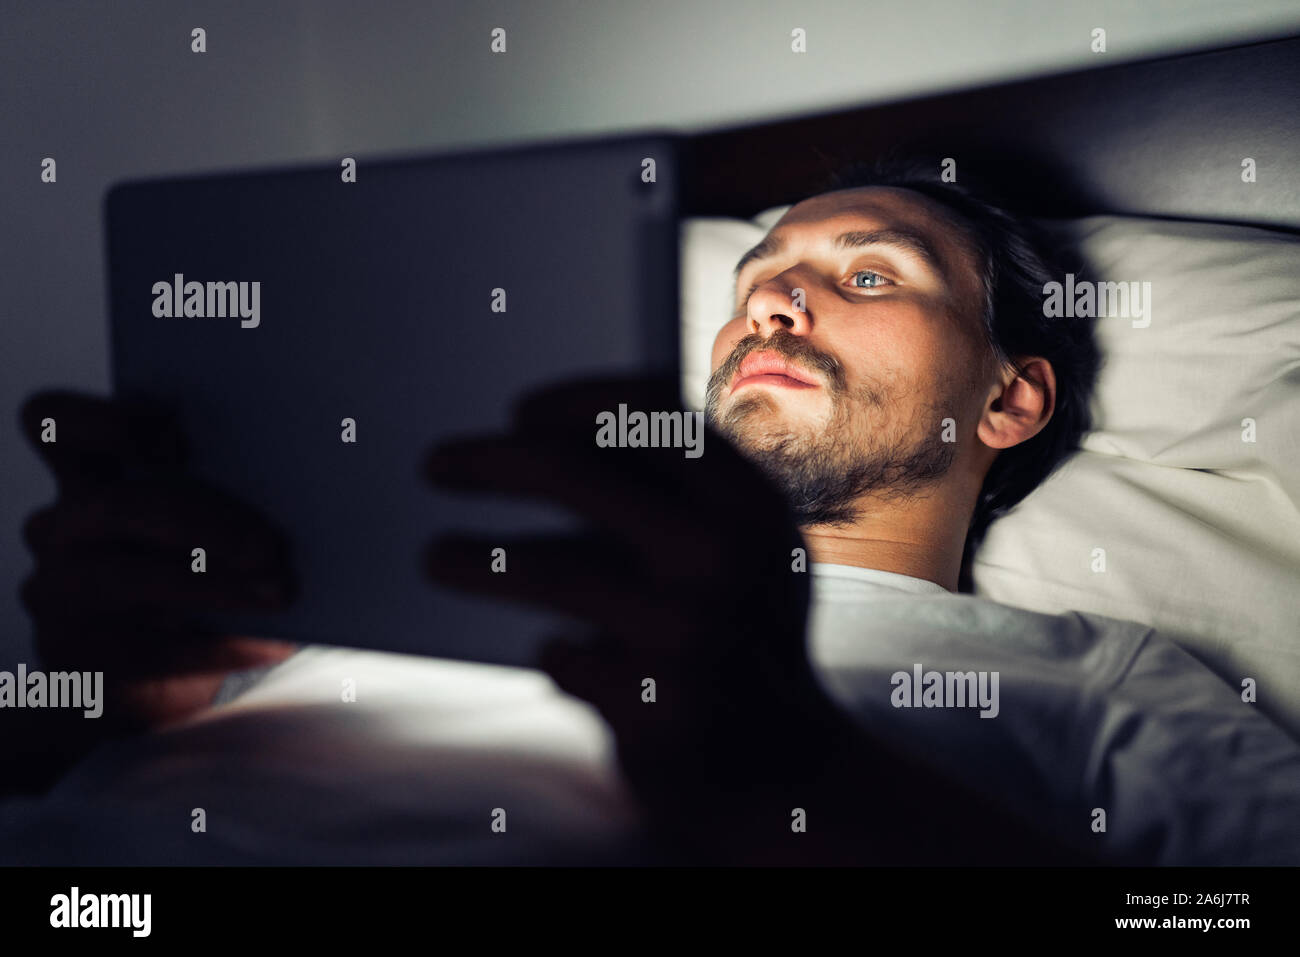 Beau jeune homme fatigué et avec une barbe ne peut pas dormir et regarde quelque chose sur sa tablette de nuit. Banque D'Images